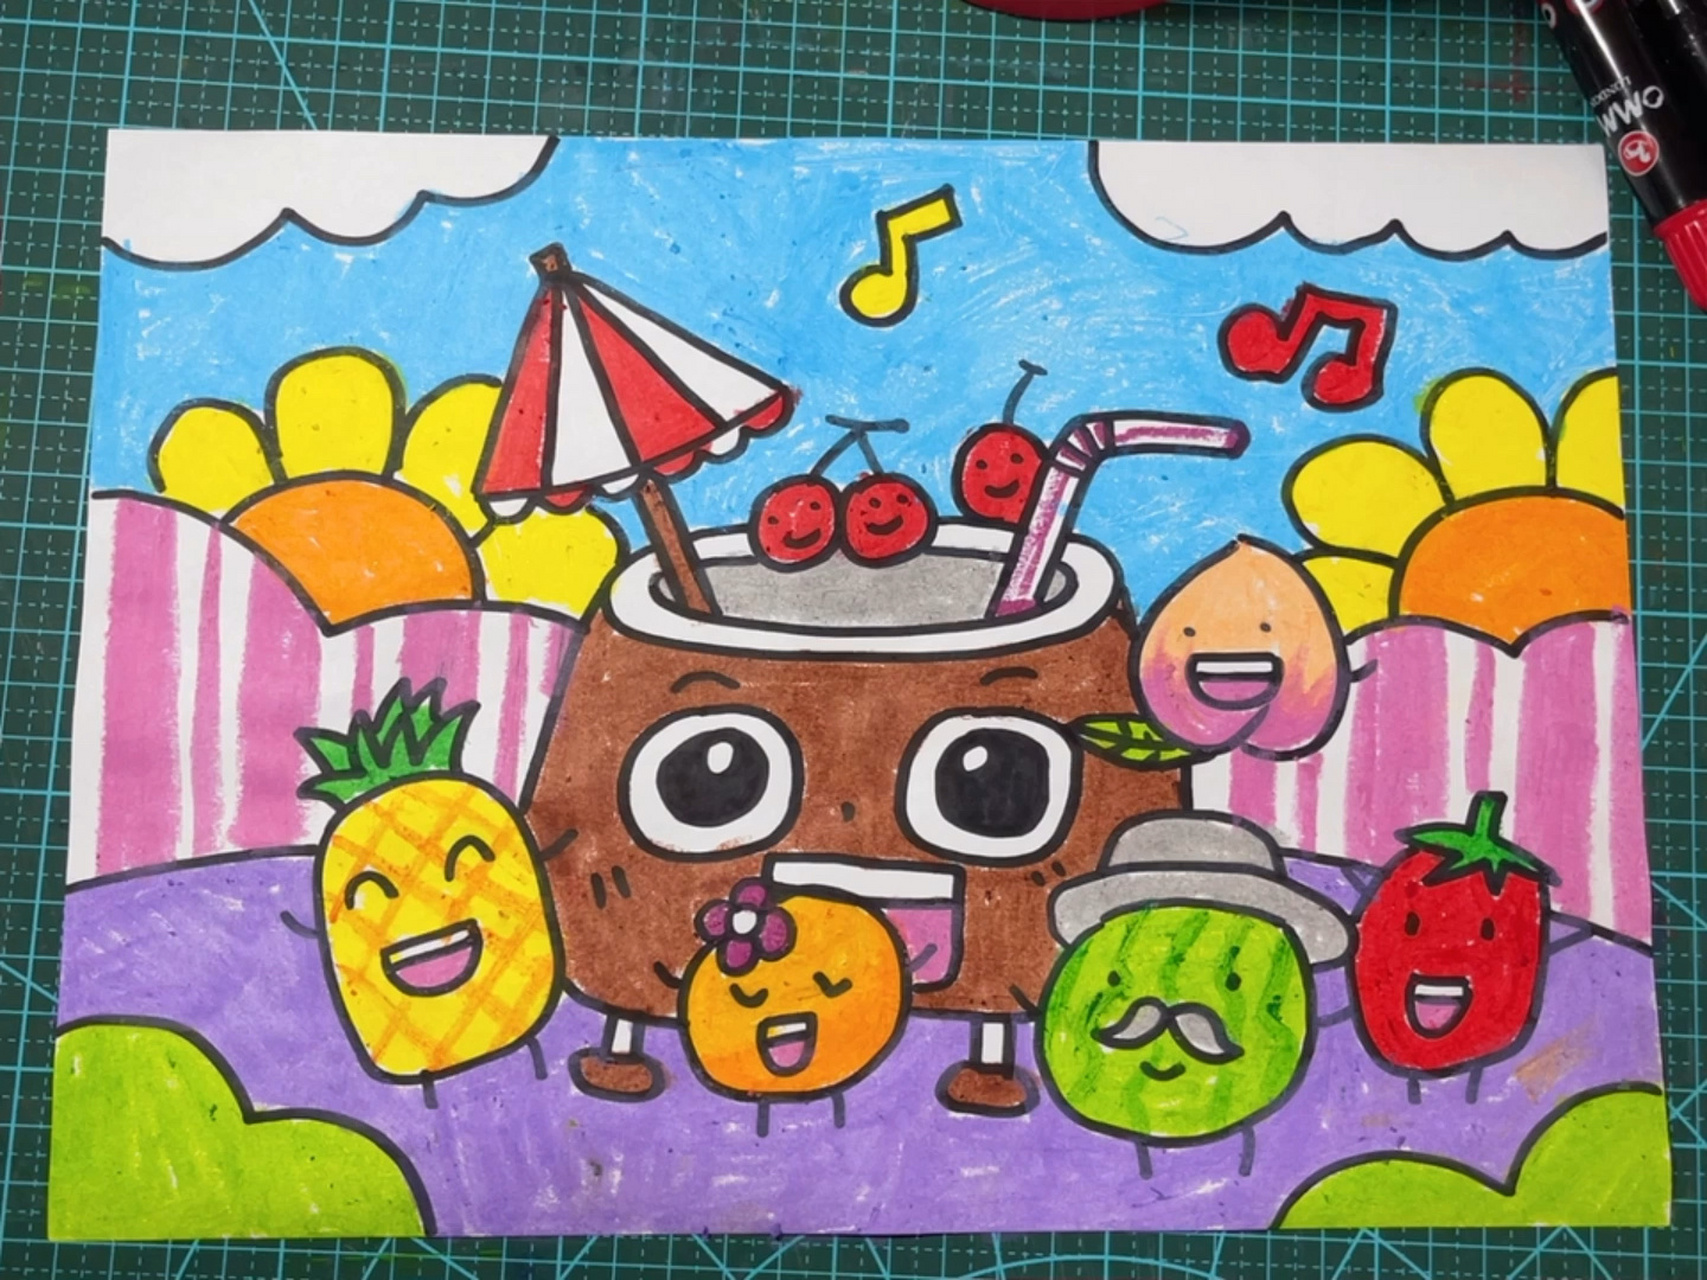 童话乐园画水果爱奇艺图片